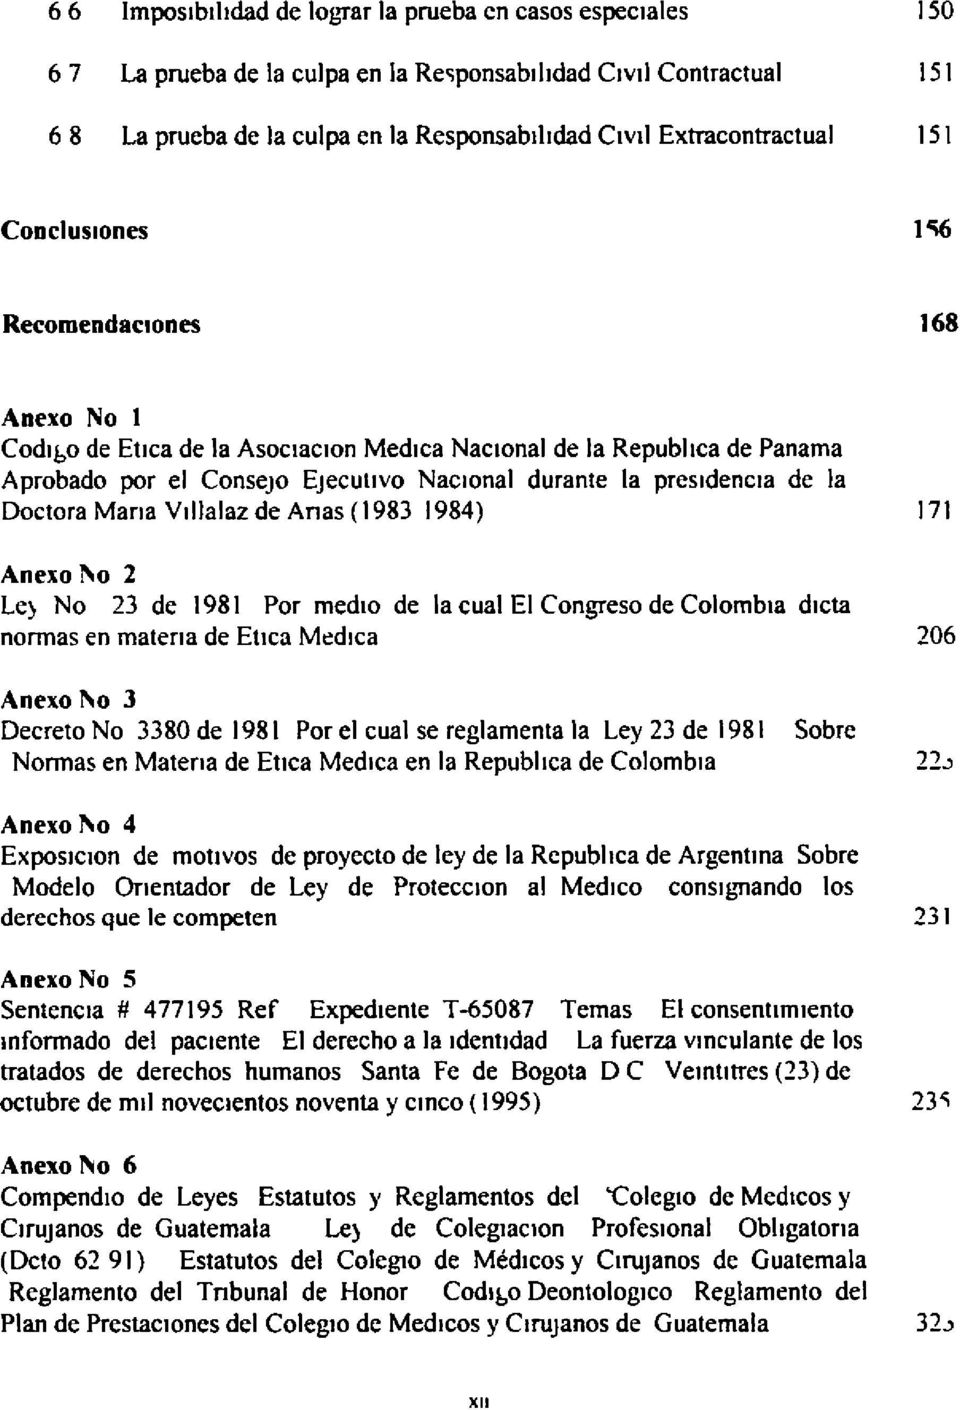 Doctora Maria Villalaz de Anas (1983 1984) 171 Anexo No 2 Le) No 23 de 1981 Por medio de la cual El Congreso de Colombia dicta normas en materia de Enea Medica 206 Anexo No 3 Decreto No 3380 de 1981